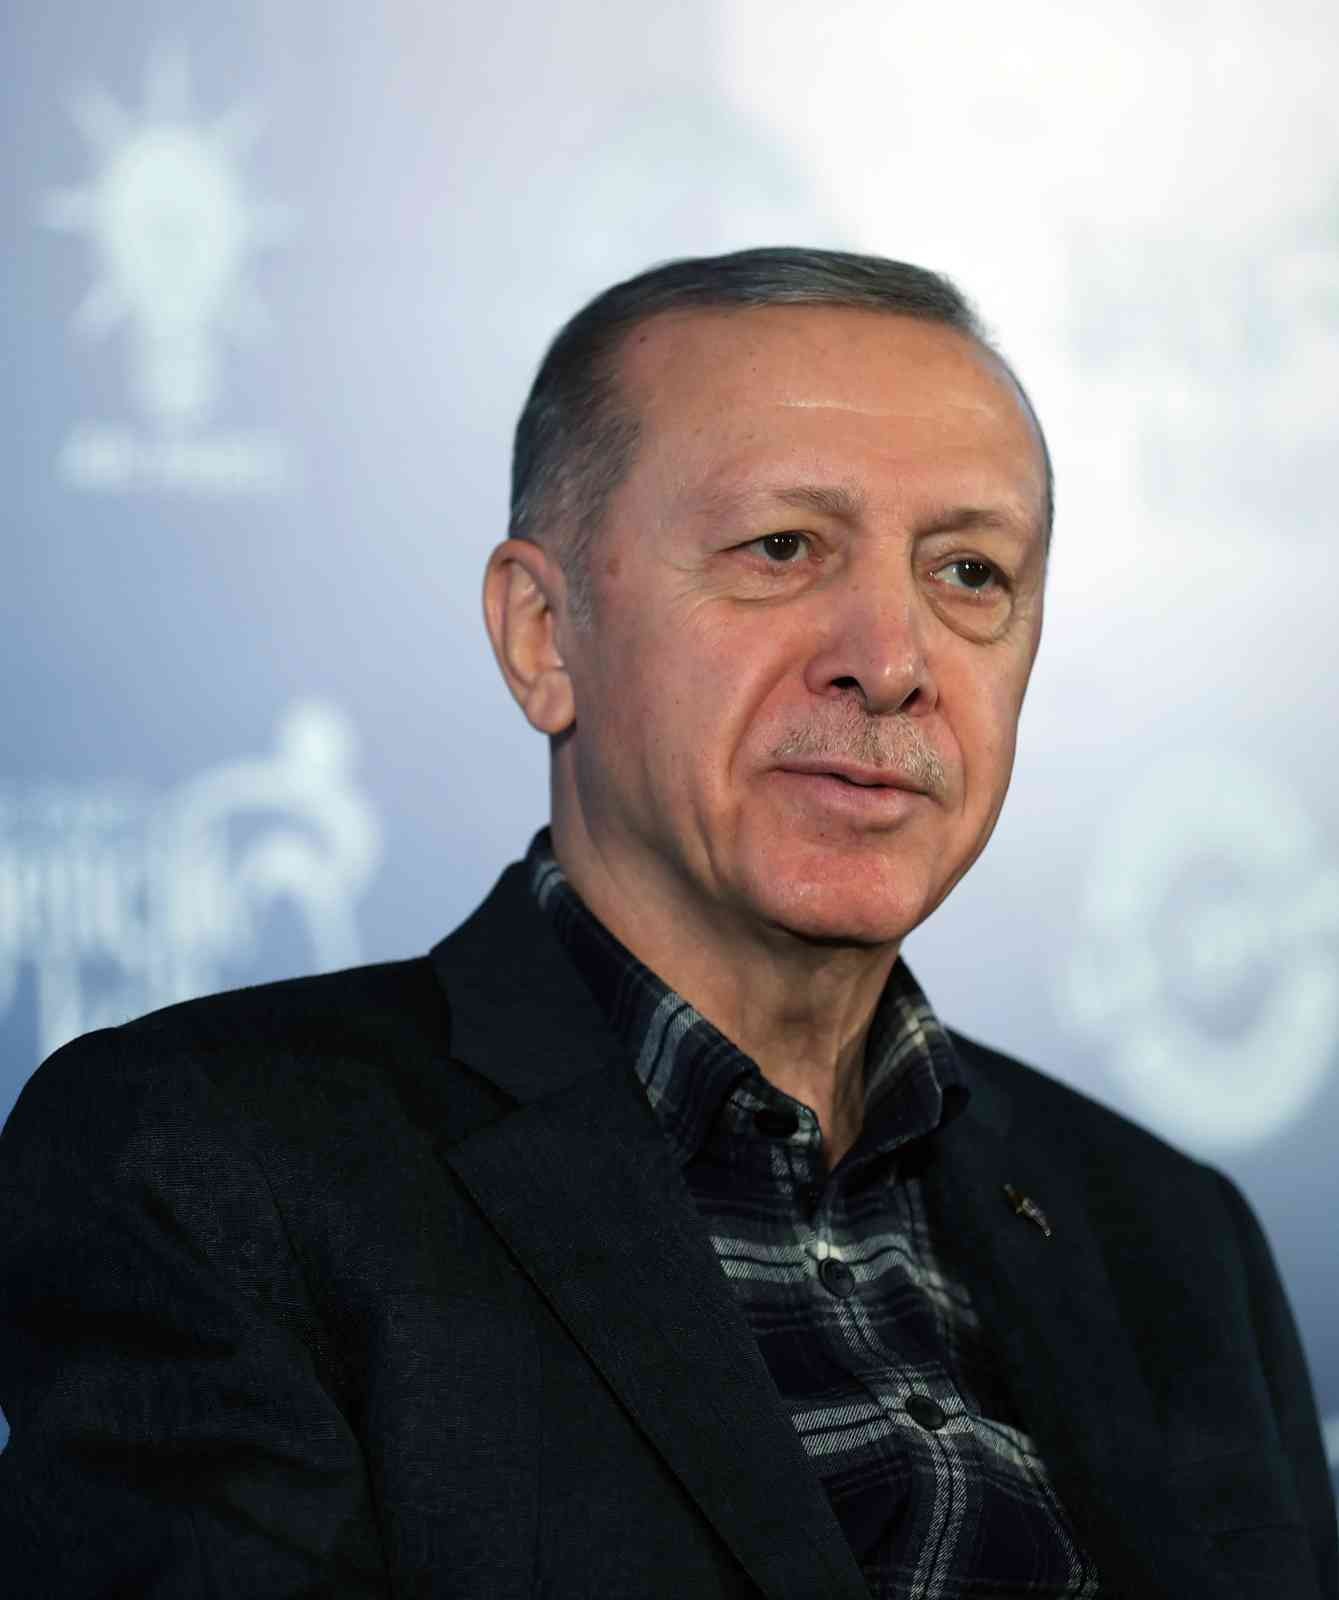 Cumhurbaşkanı Erdoğan: 10 Martta Yetkimi Kullanacağım, Ondan Sonra 60 Gün Süre Var